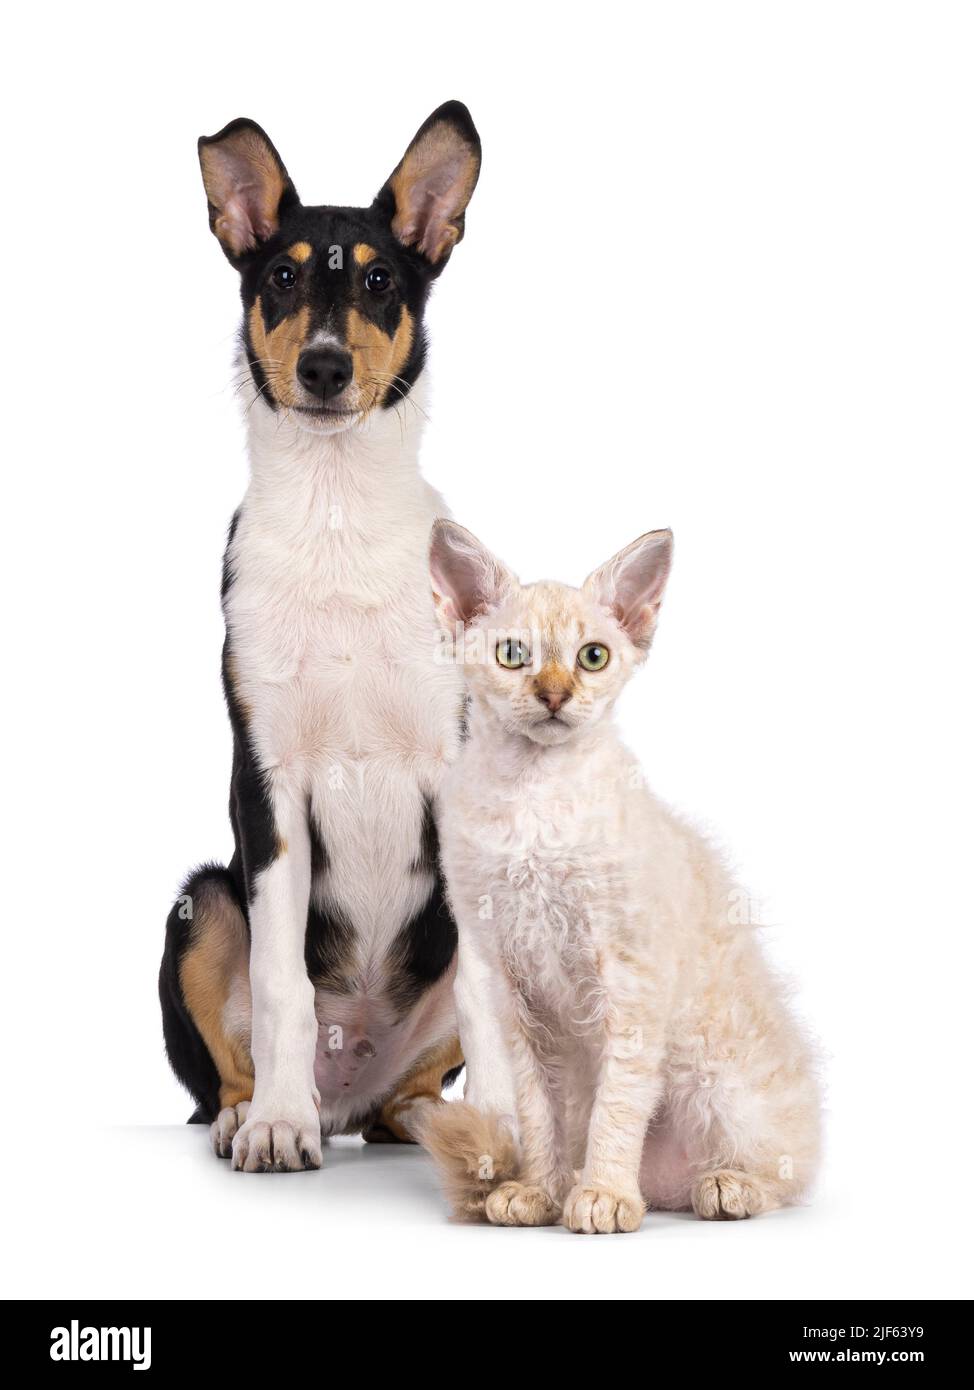 Cucciolo liscio di cane Collie e gattino di gatto LaPerm, seduti insieme. Entrambi guardando verso la fotocamera. Isolato su sfondo bianco. Foto Stock